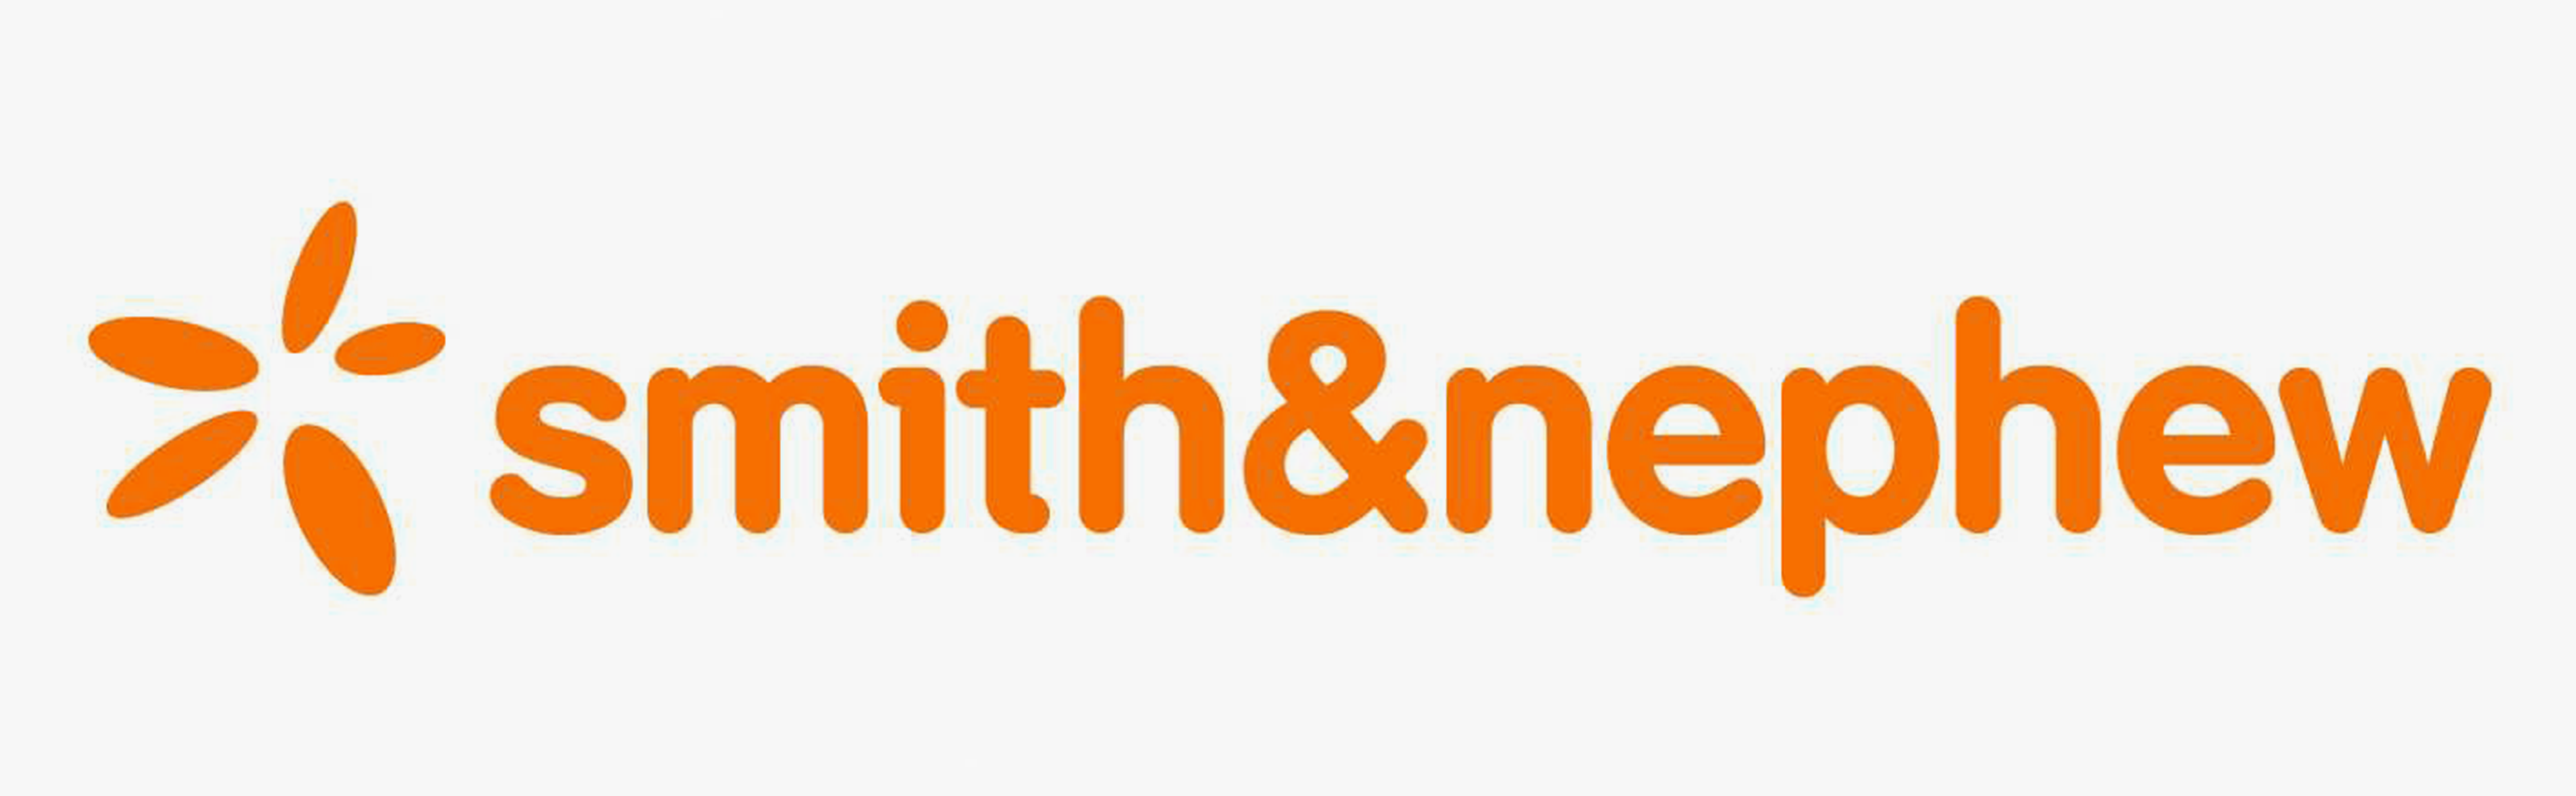 Smith & Nephew, Inc.